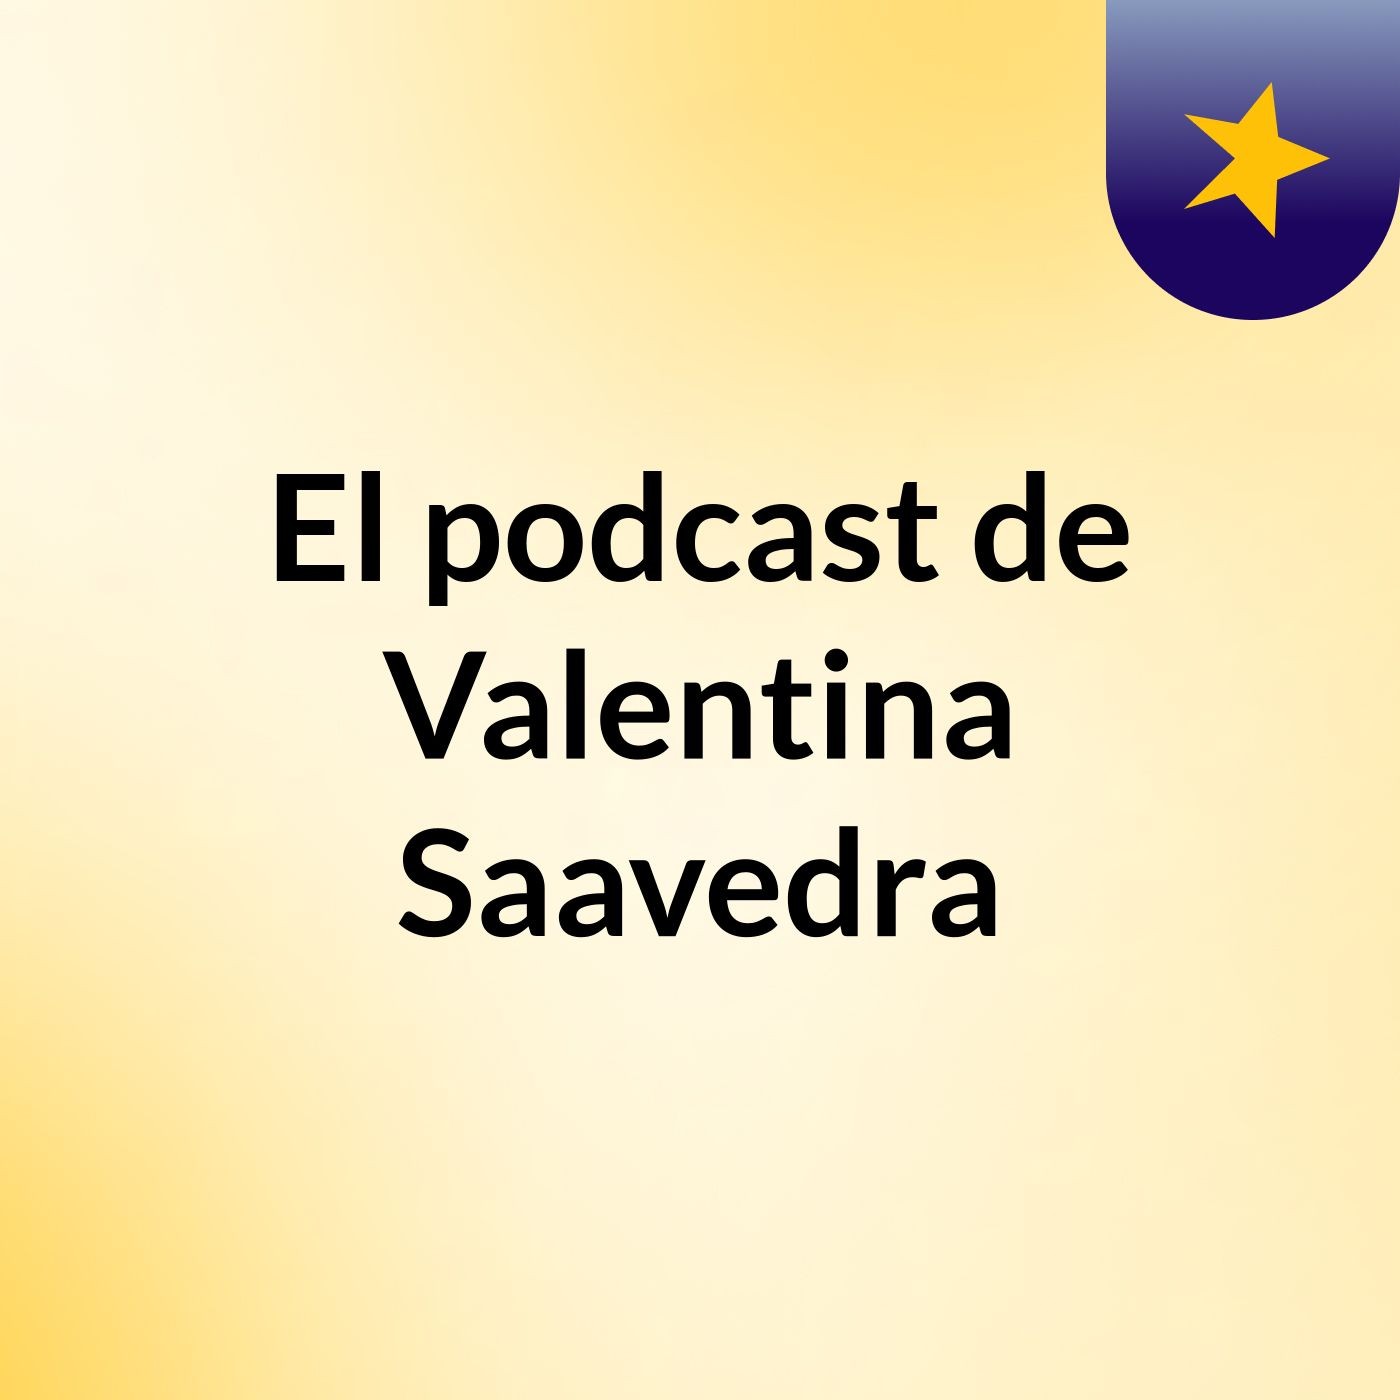 El podcast de Valentina Saavedra